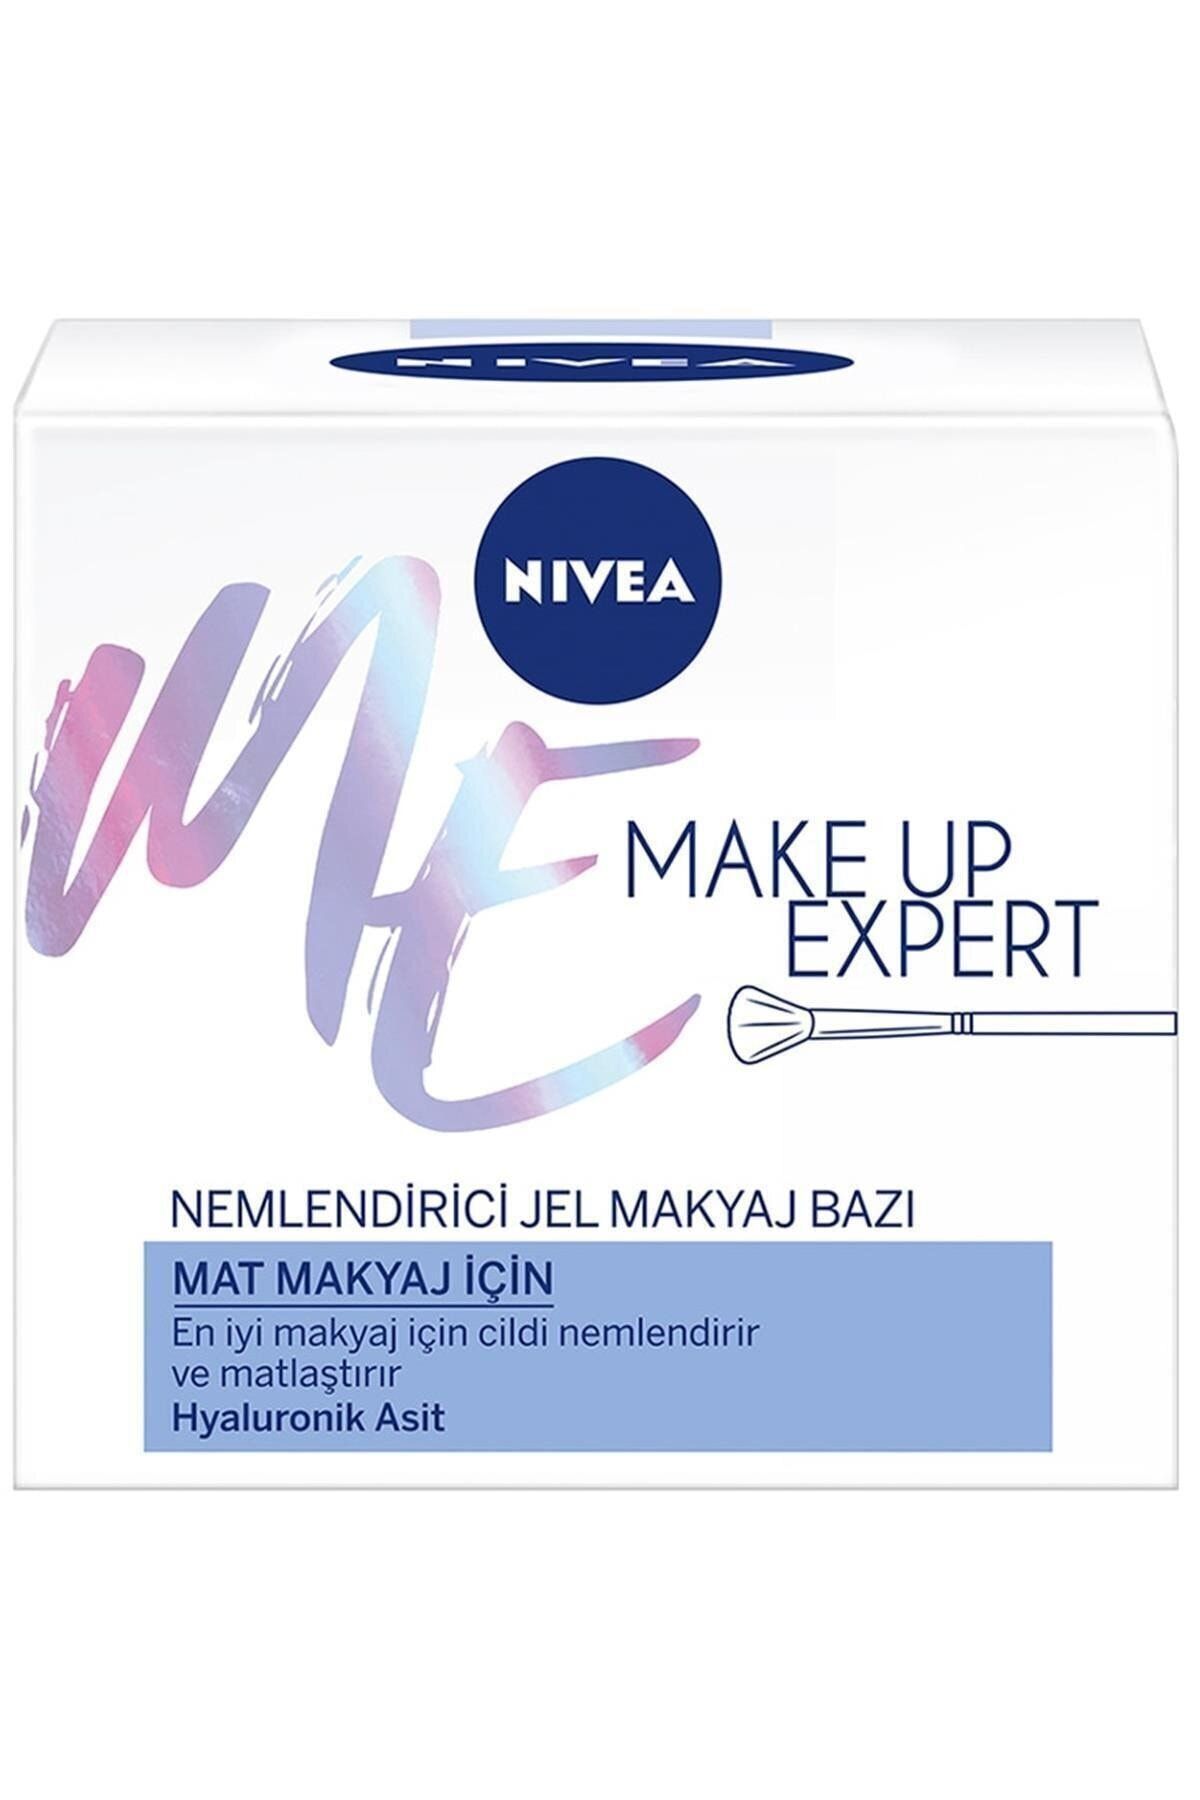 NIVEA Make Up Expert Mat Makyaj Için Nemlendirici Jel Makyaj Bazı